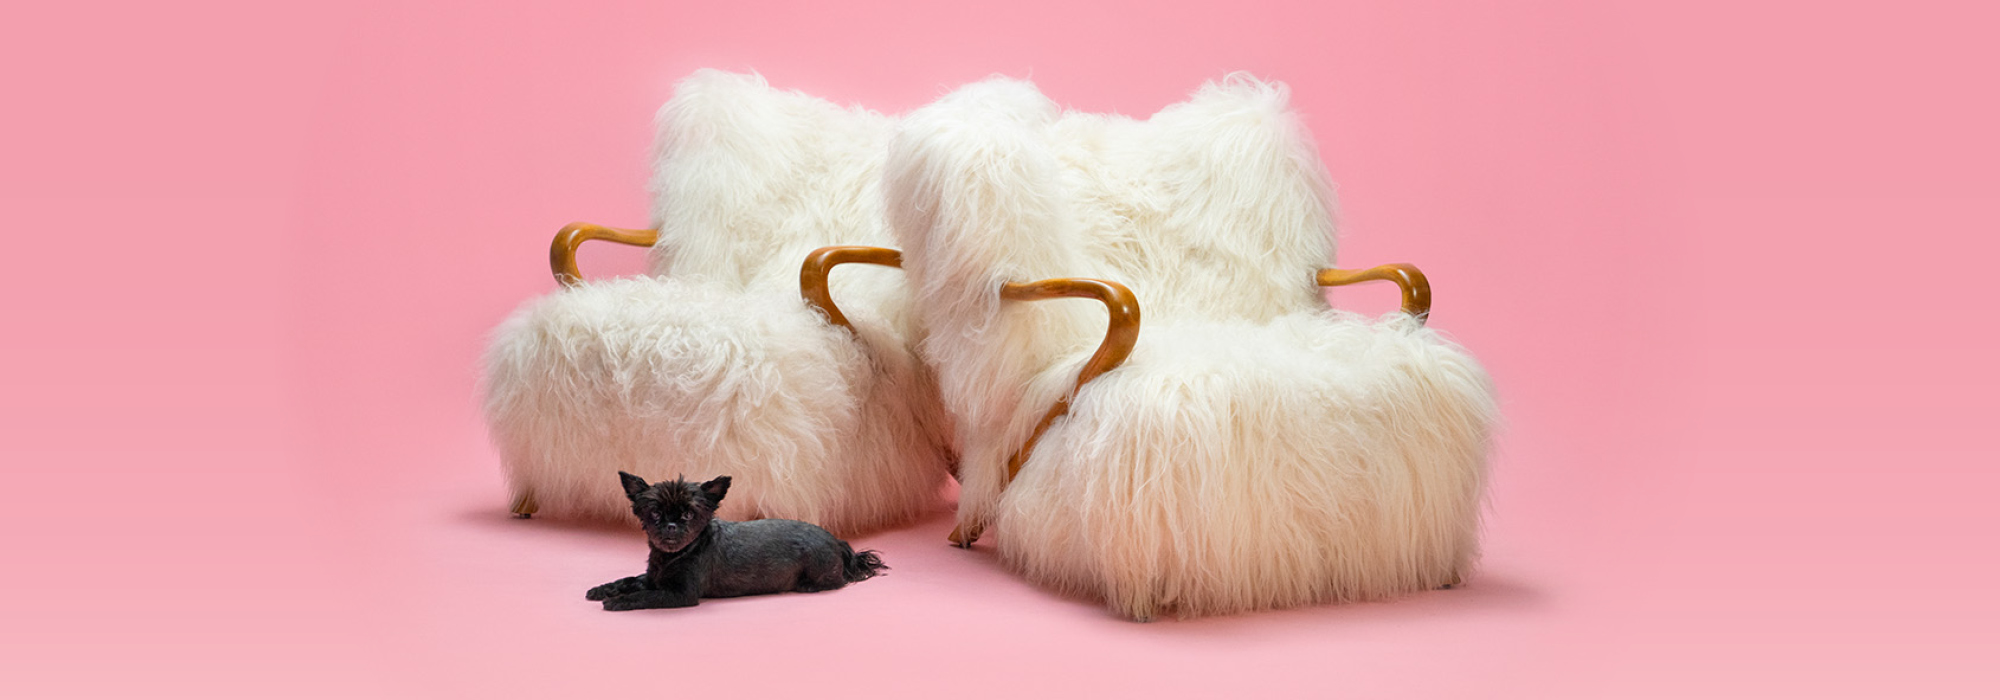 Antikmässan - en rosa bakgrund med två fluffiga fåtöljer i vitt och en svart katt. 